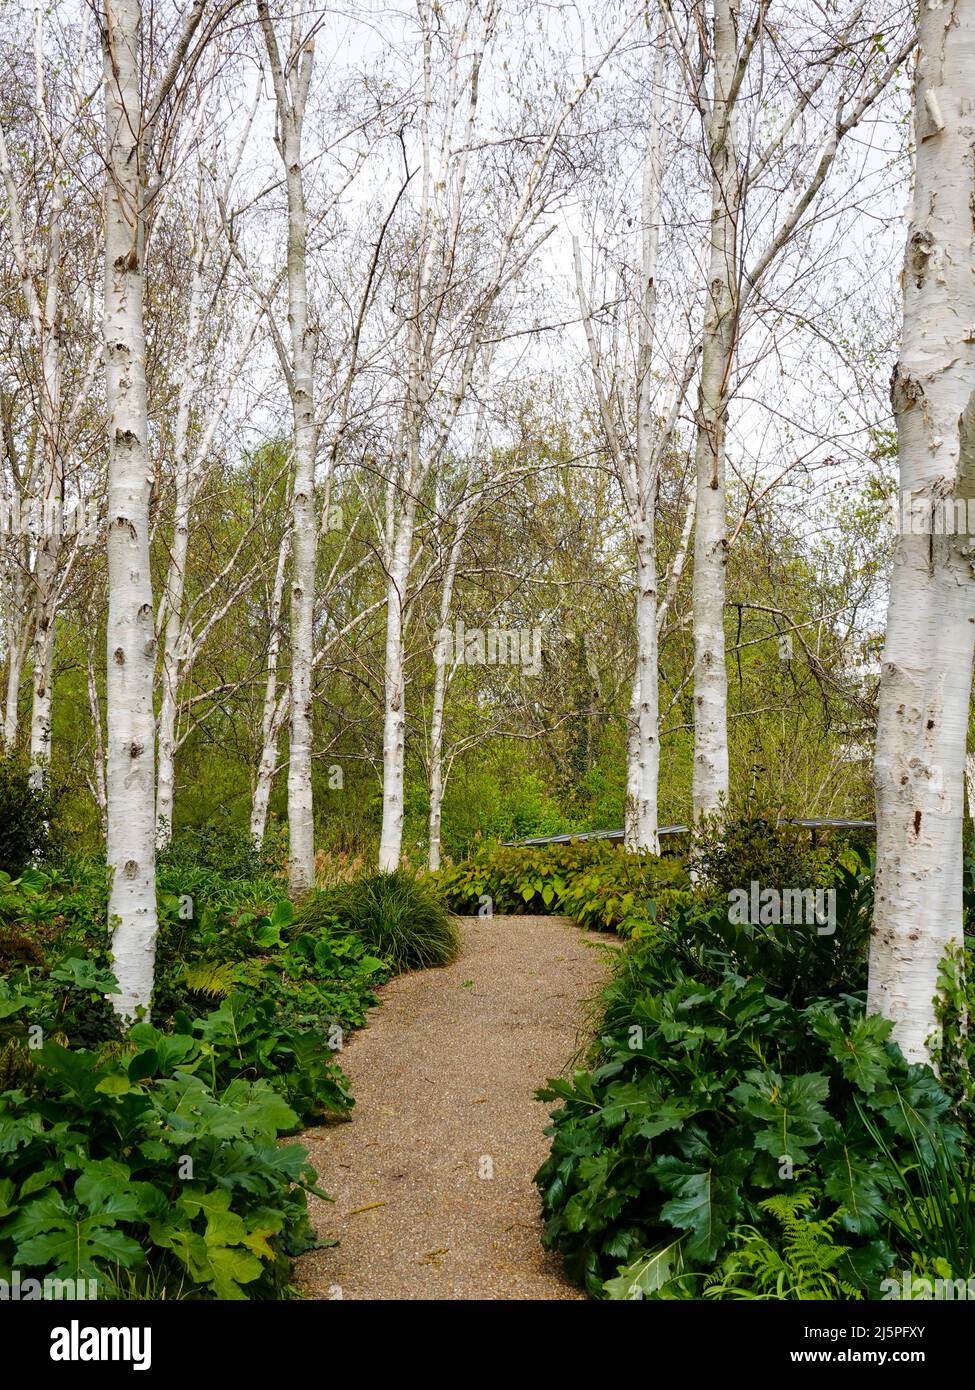 Jardines del Parc de Bercy a principios de primavera, París, Francia. Foto de stock